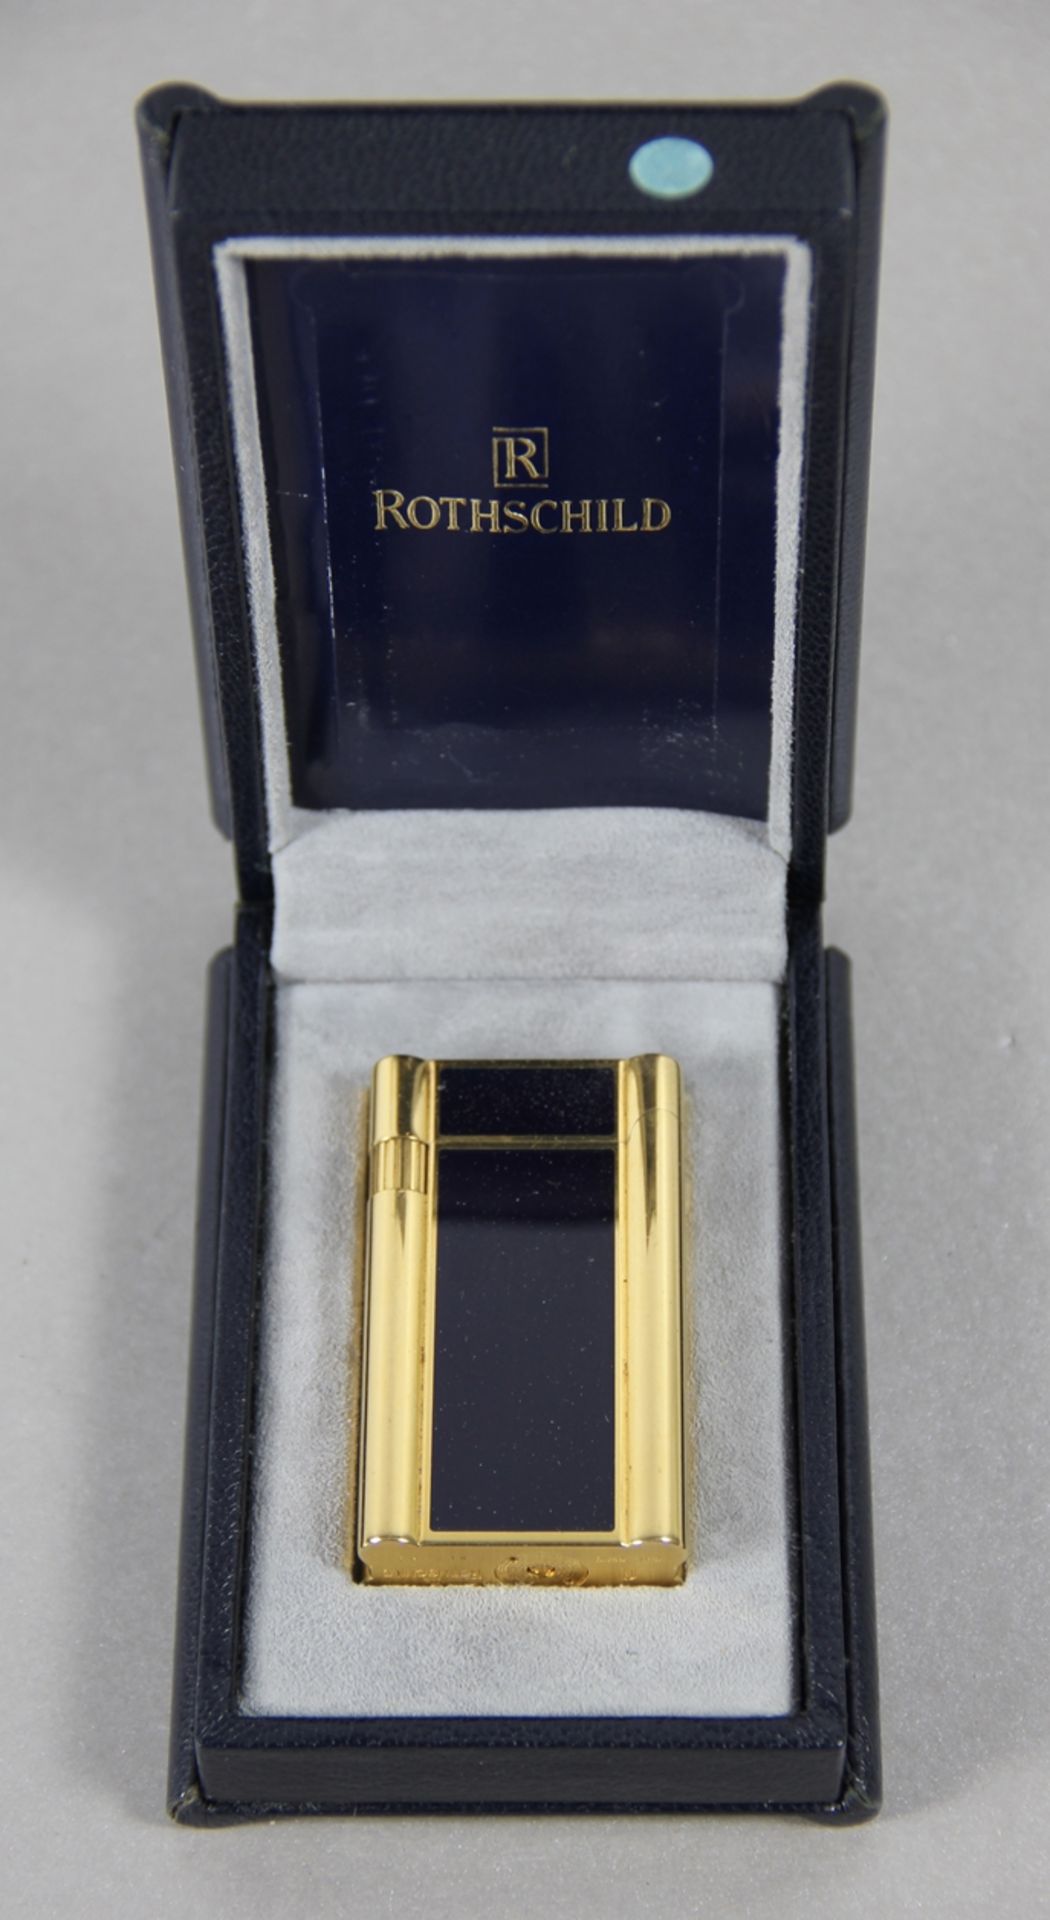 Rothschild-Feuerzeug